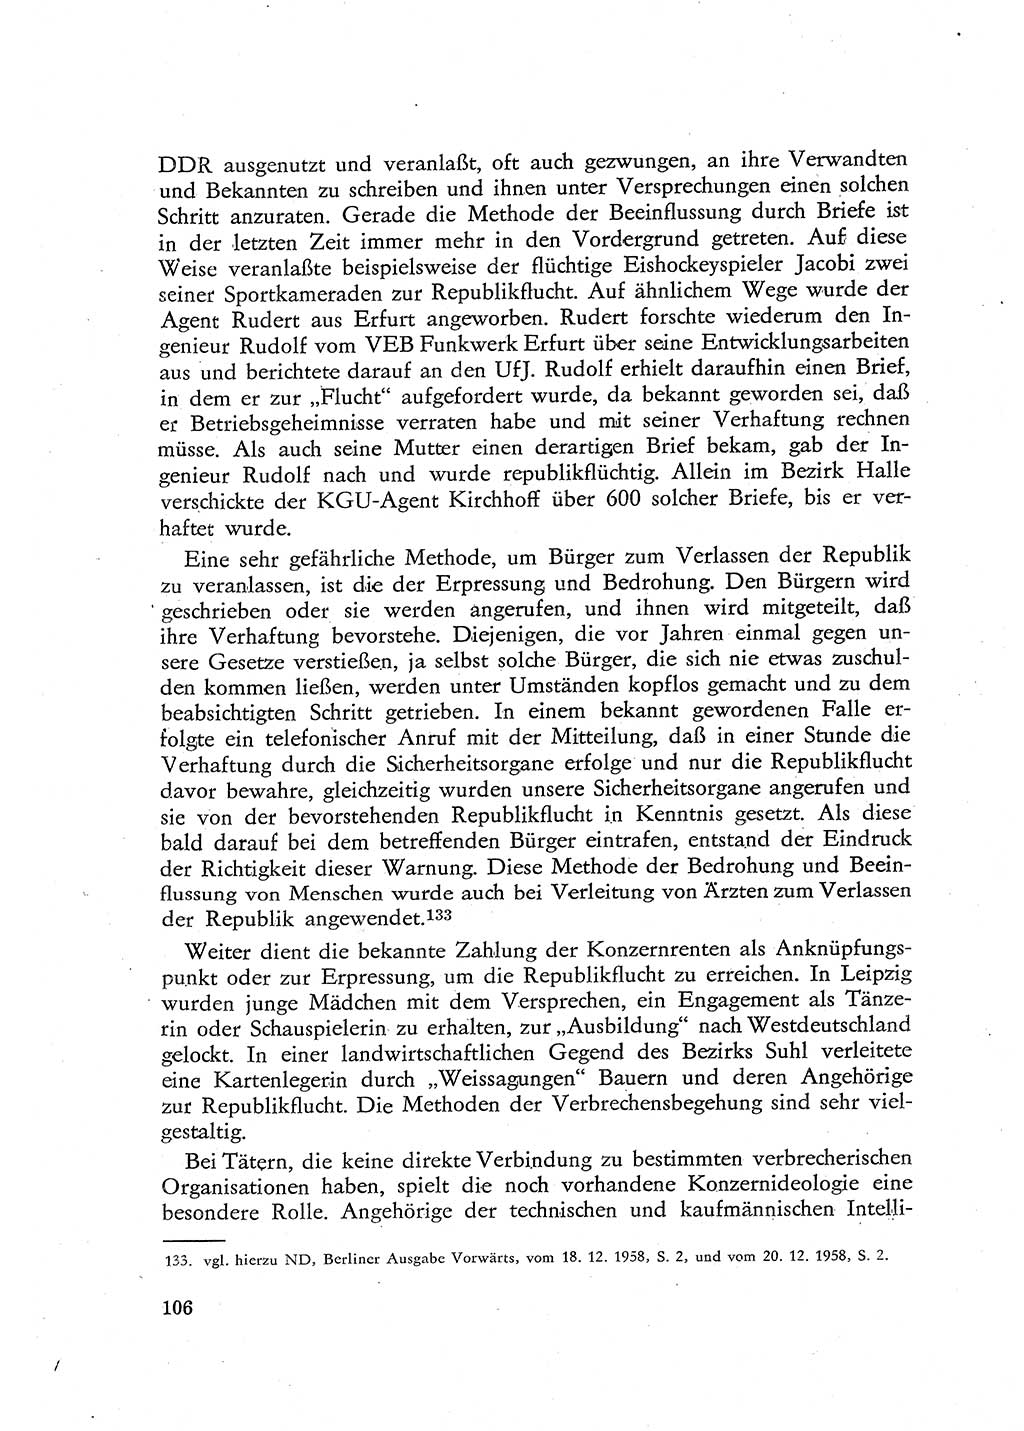 Beiträge zum Strafrecht [Deutsche Demokratische Republik (DDR)], Staatsverbrechen 1959, Seite 106 (Beitr. Strafr. DDR St.-Verbr. 1959, S. 106)